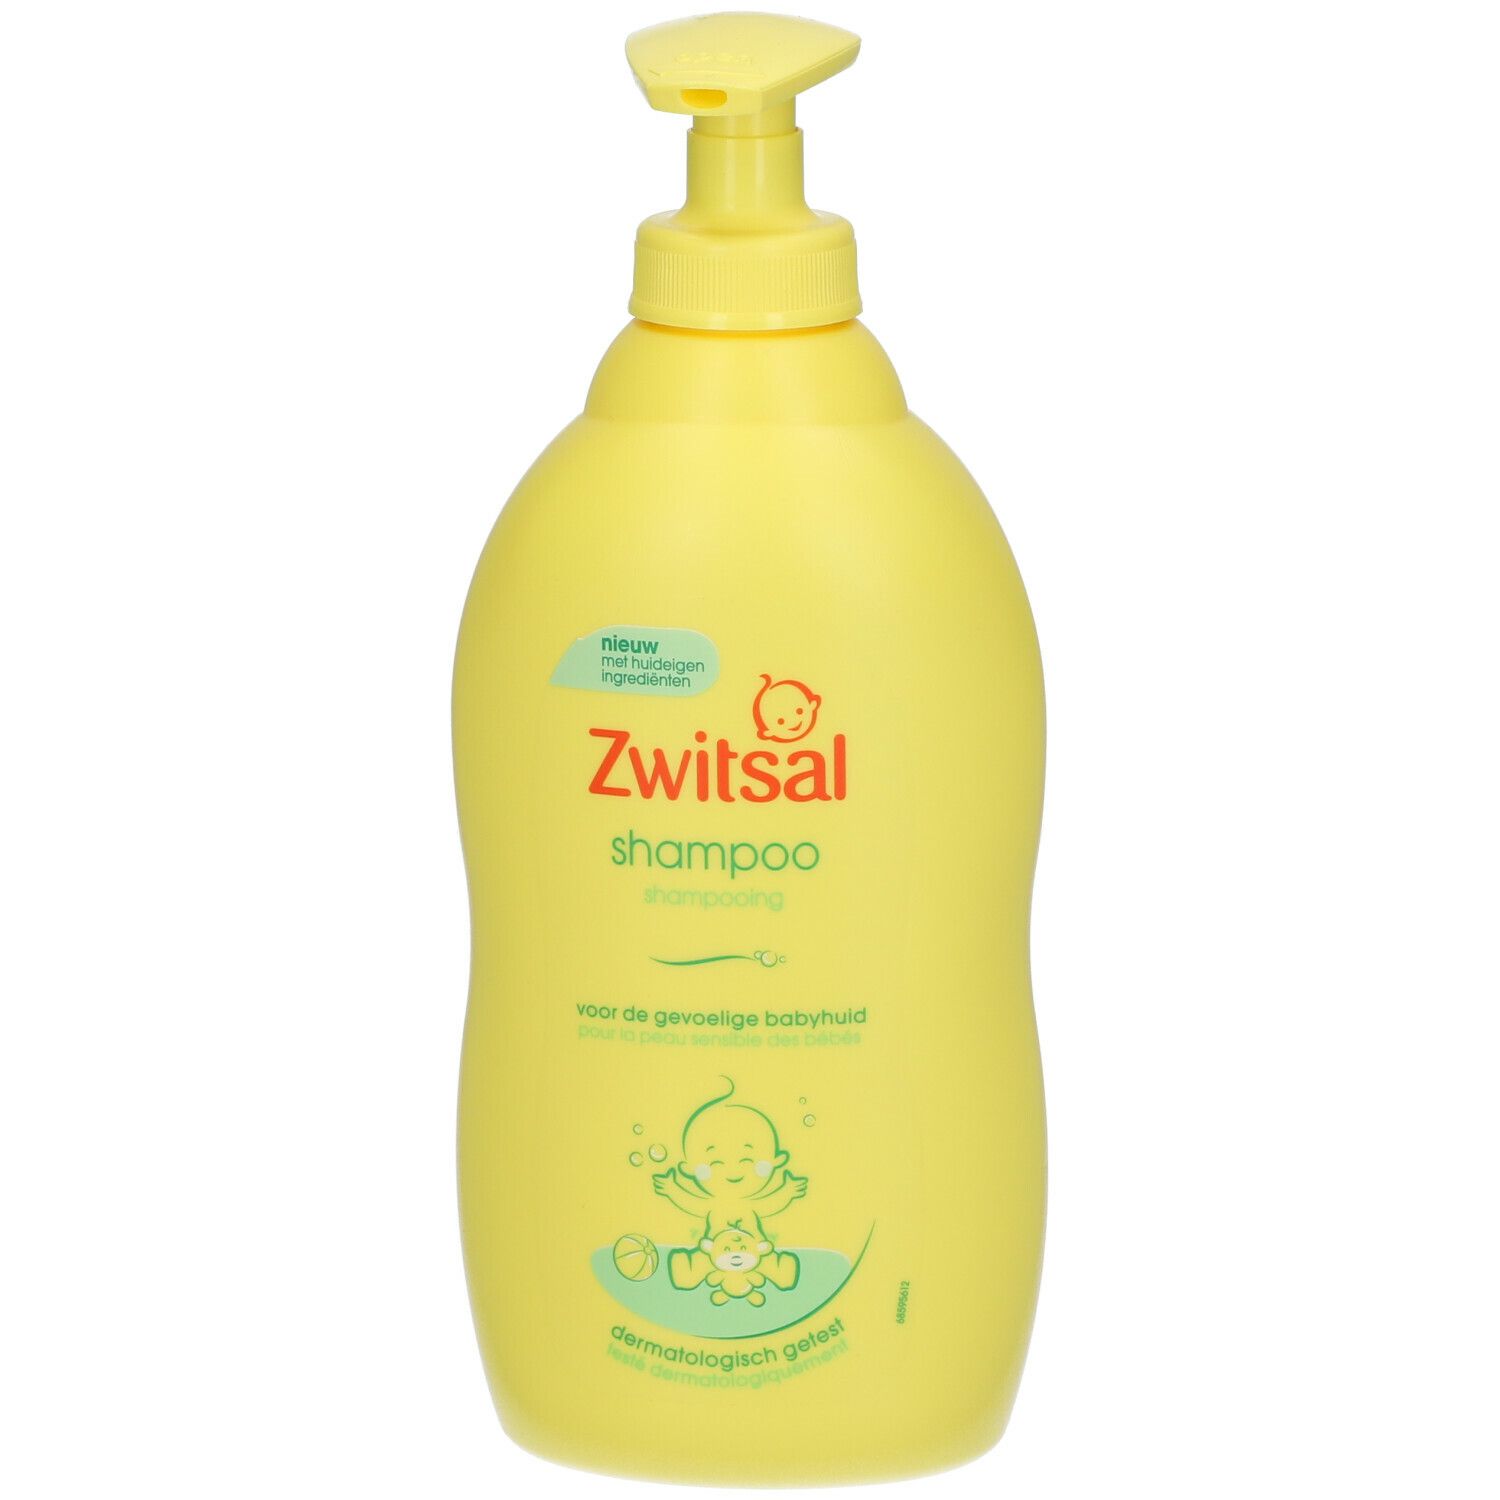 SARA LEE H & BC BELGIUM Zwitsal® Baby Shampoo